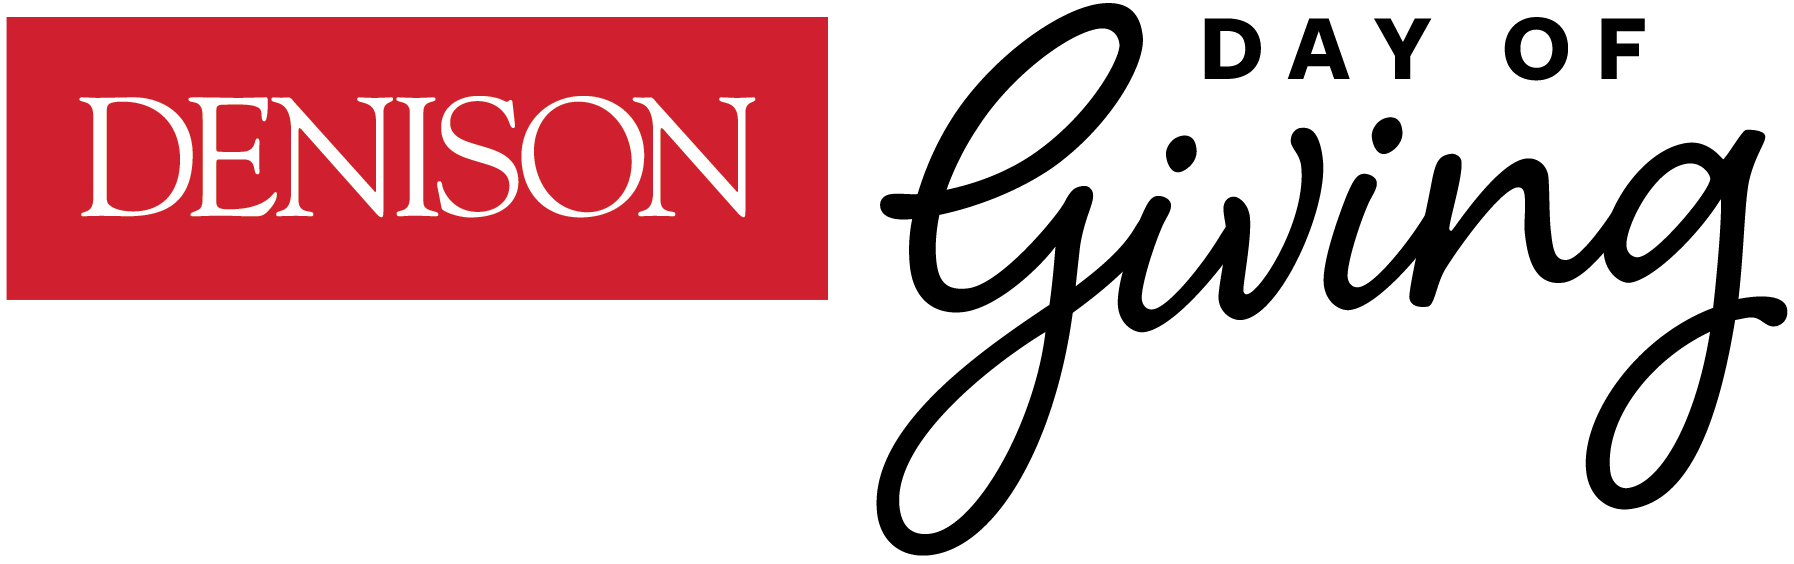 Denison's Day of Giving 2022 logo